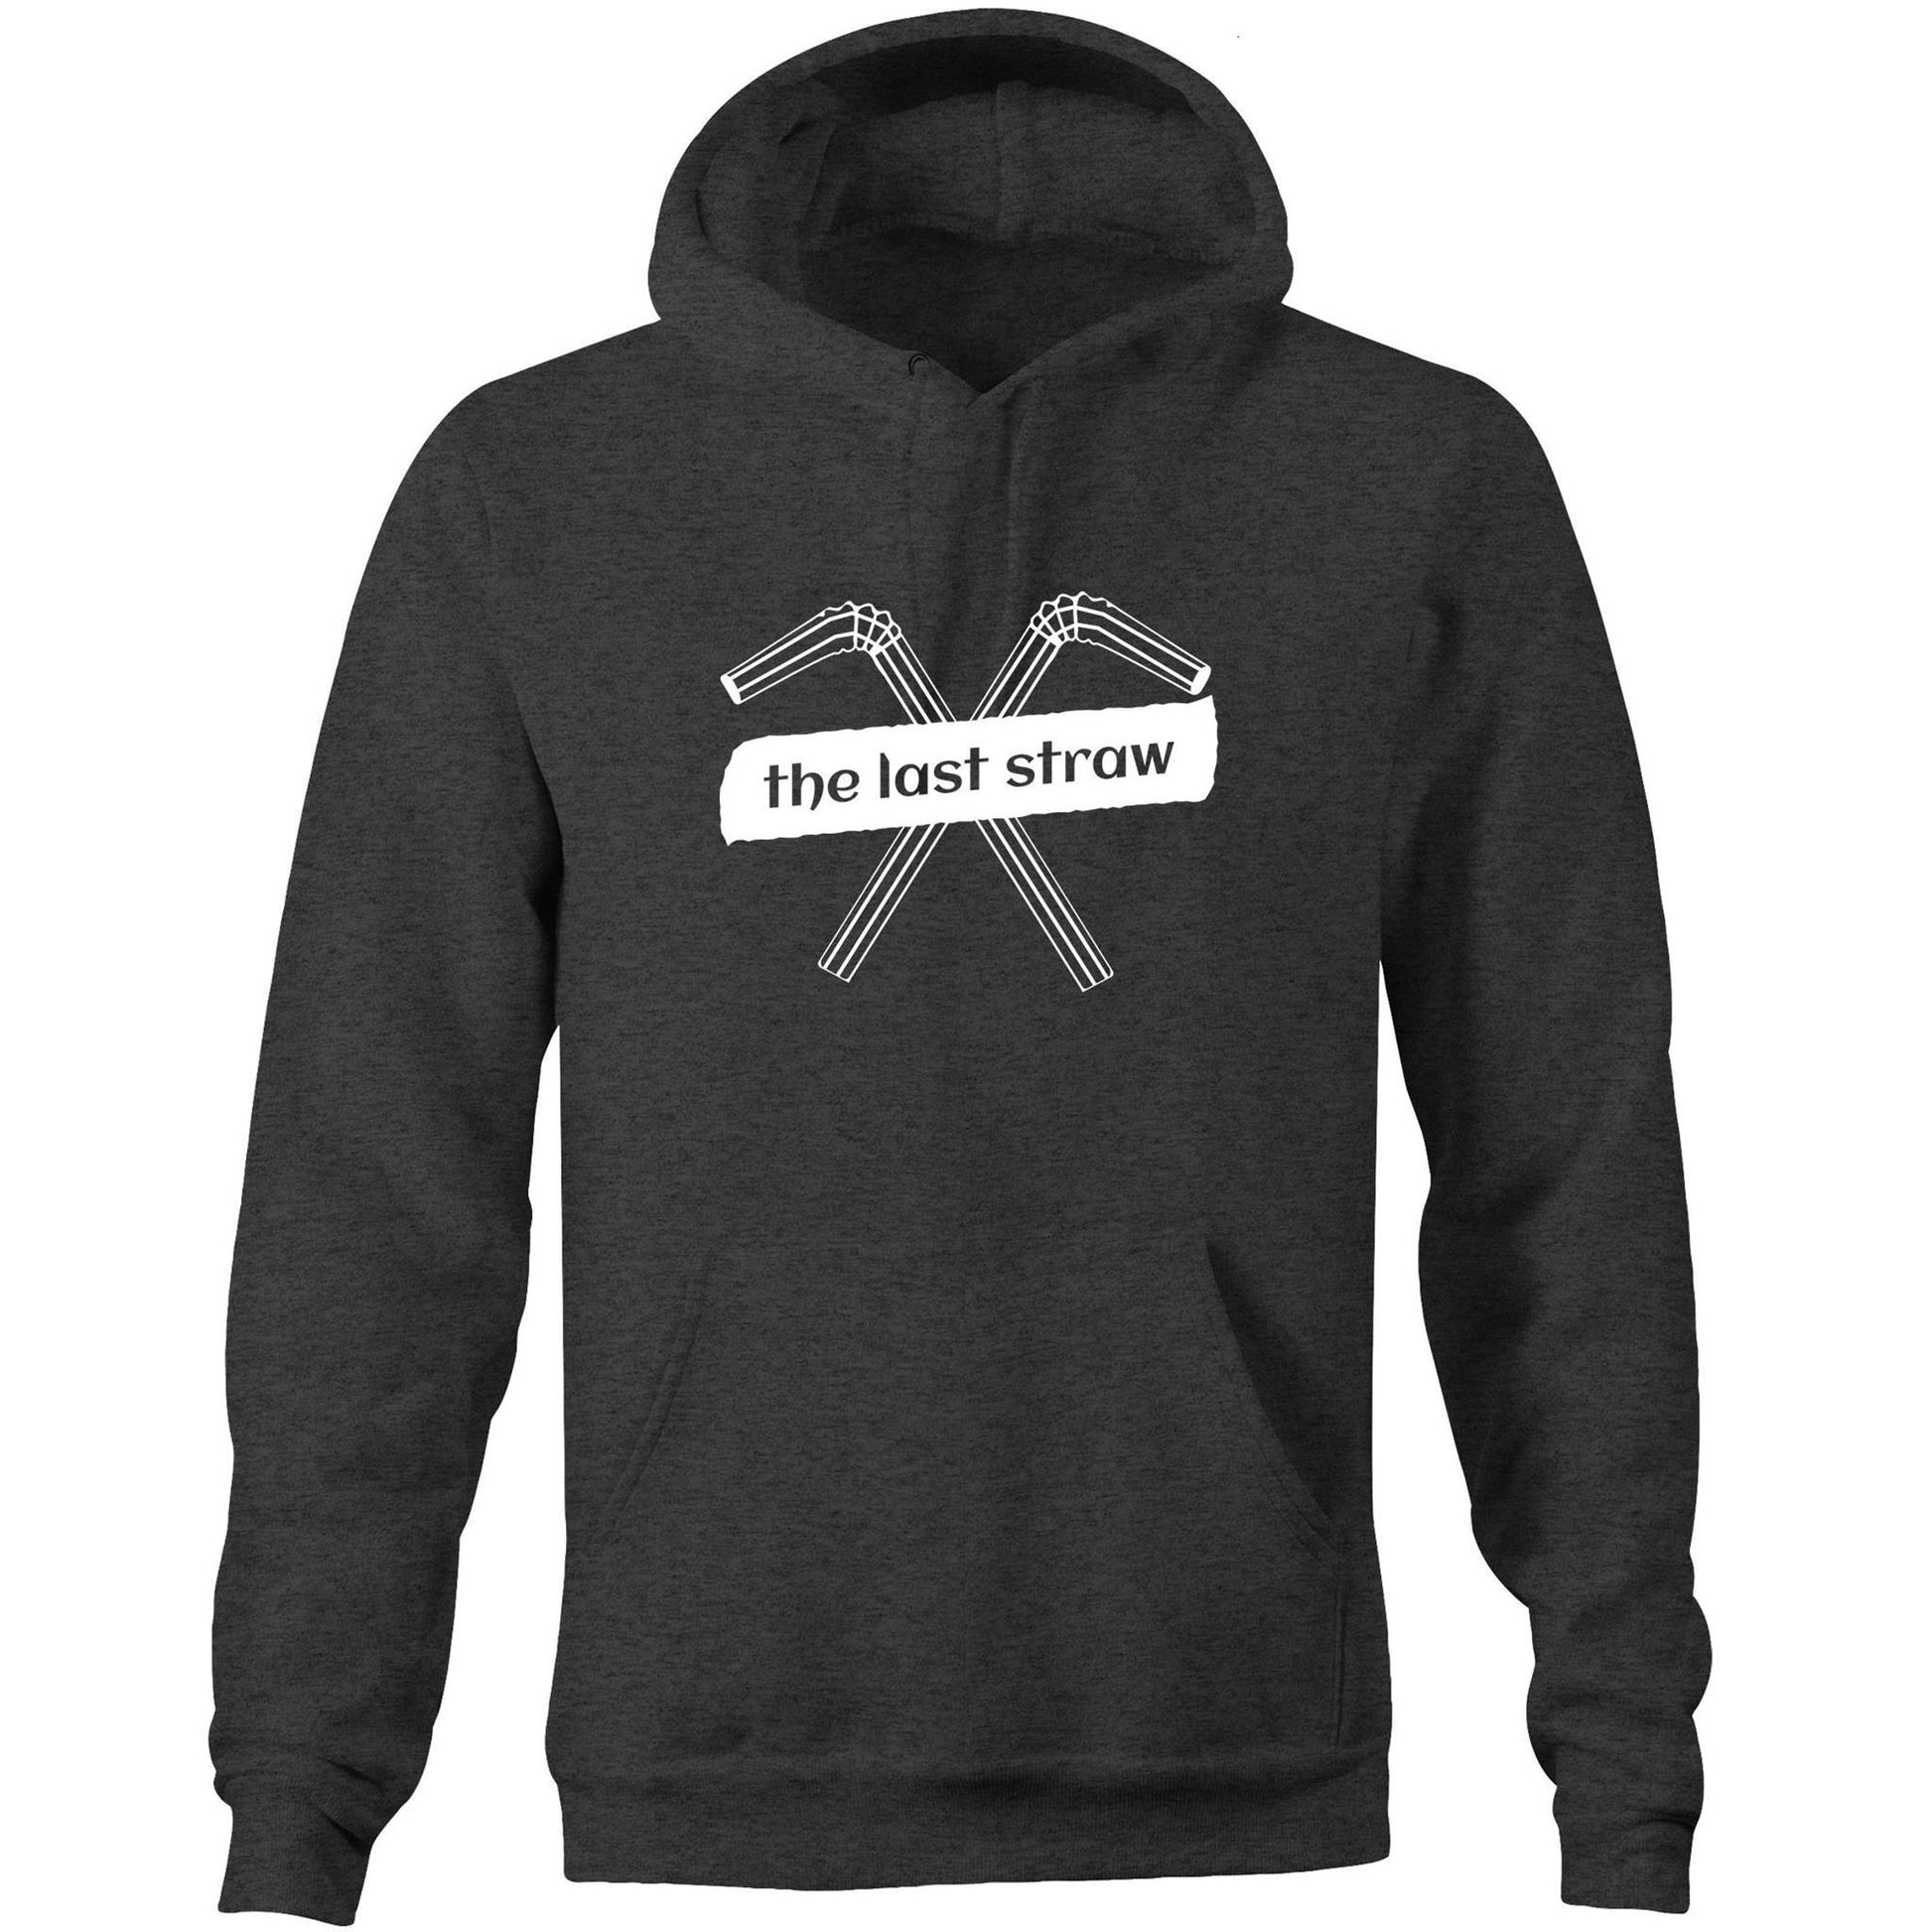 The Last Straw - Pocket Hoodie Sweatshirt Asphalt Marle Hoodie Environment Mens Womens